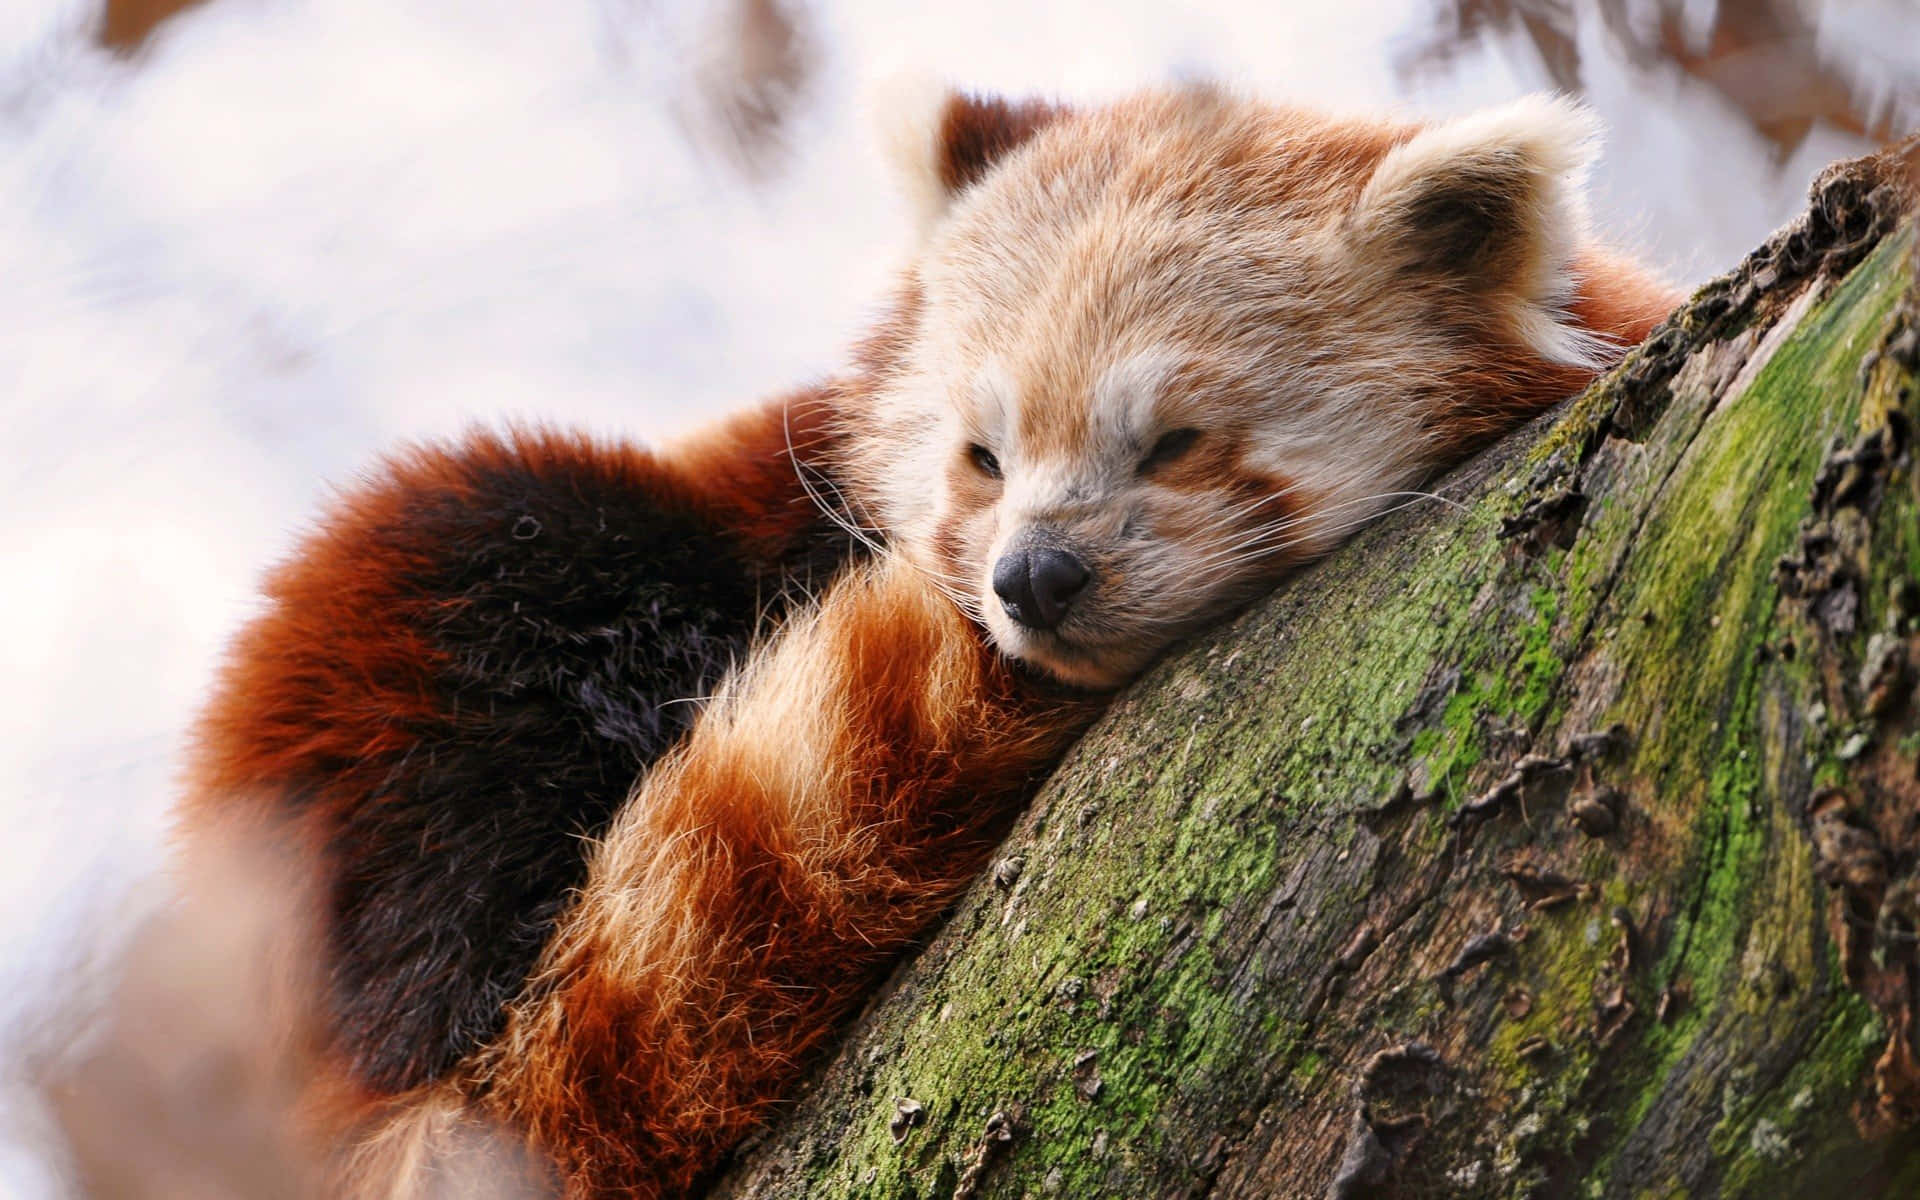 sleeping red pandas